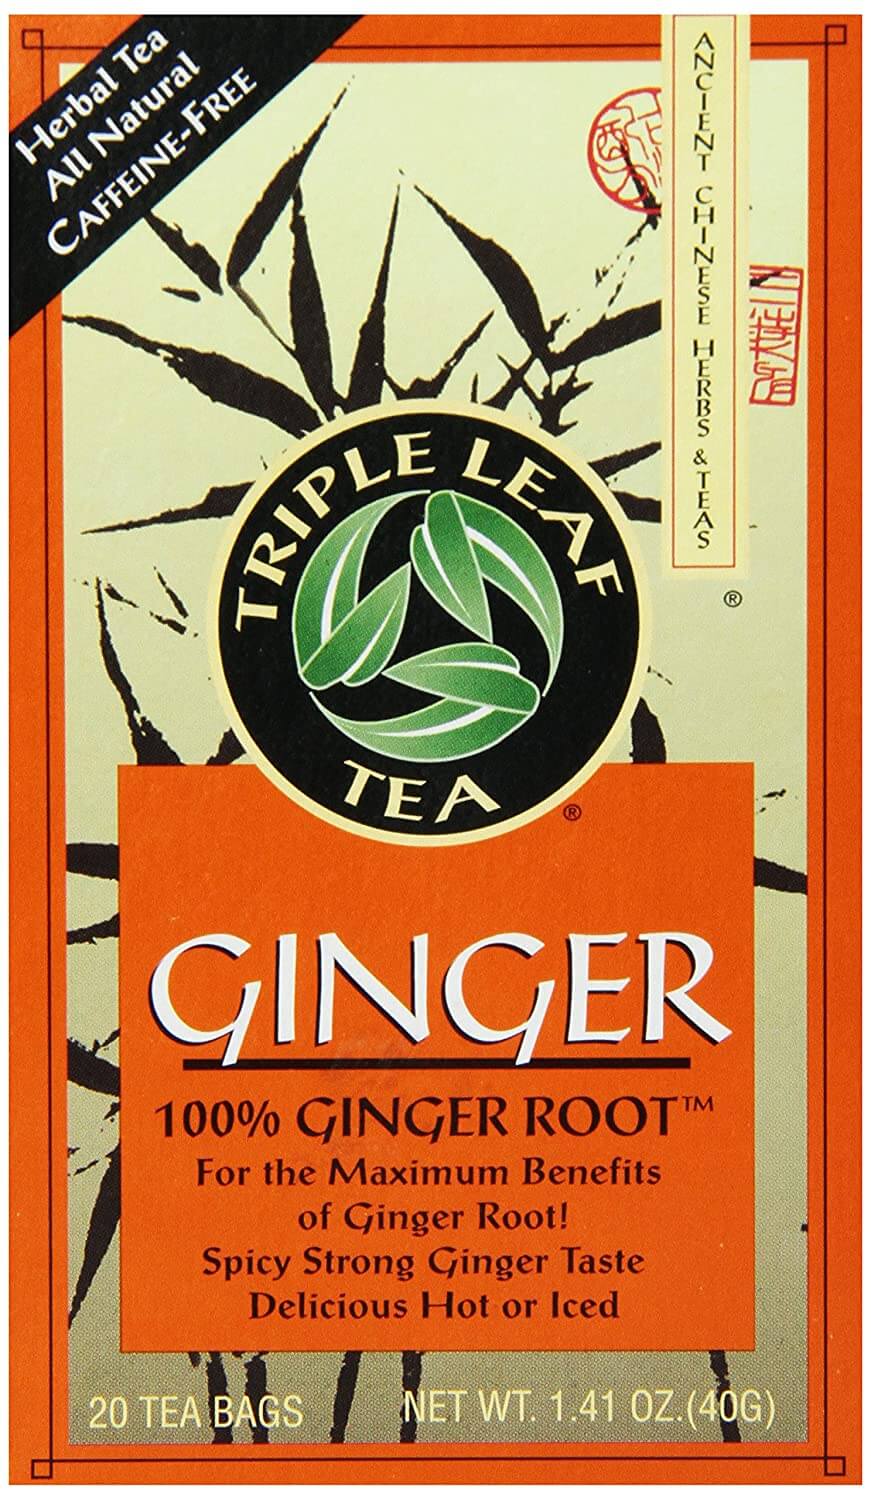 Triple Leaf Ginger Tea